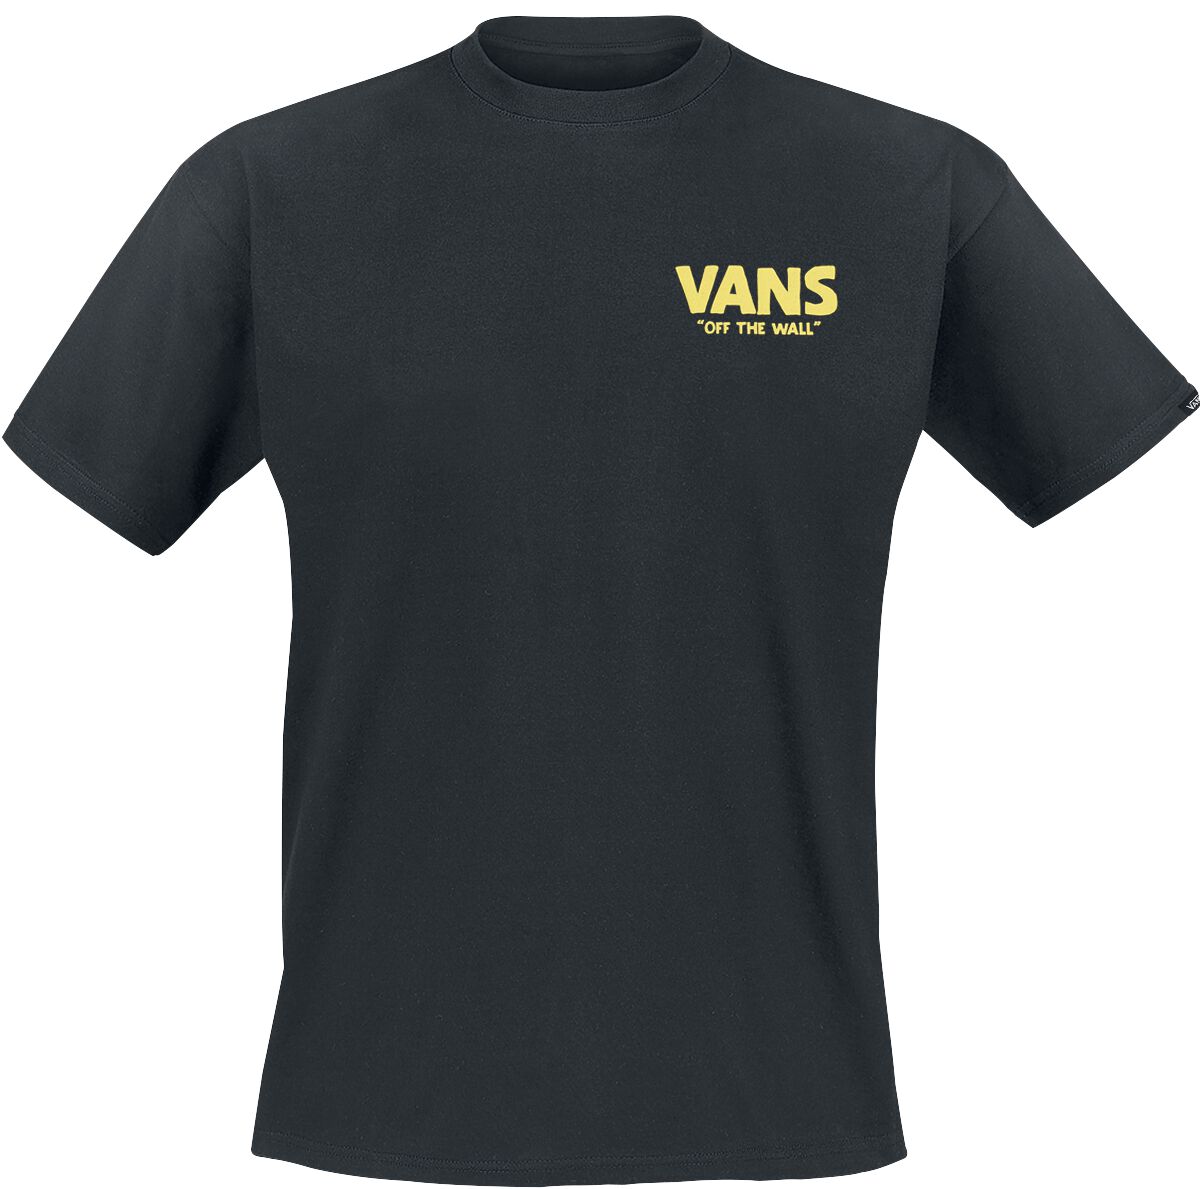 Vans T-Shirt - Stay Cool Tee - S bis XXL - für Männer - Größe XL - schwarz